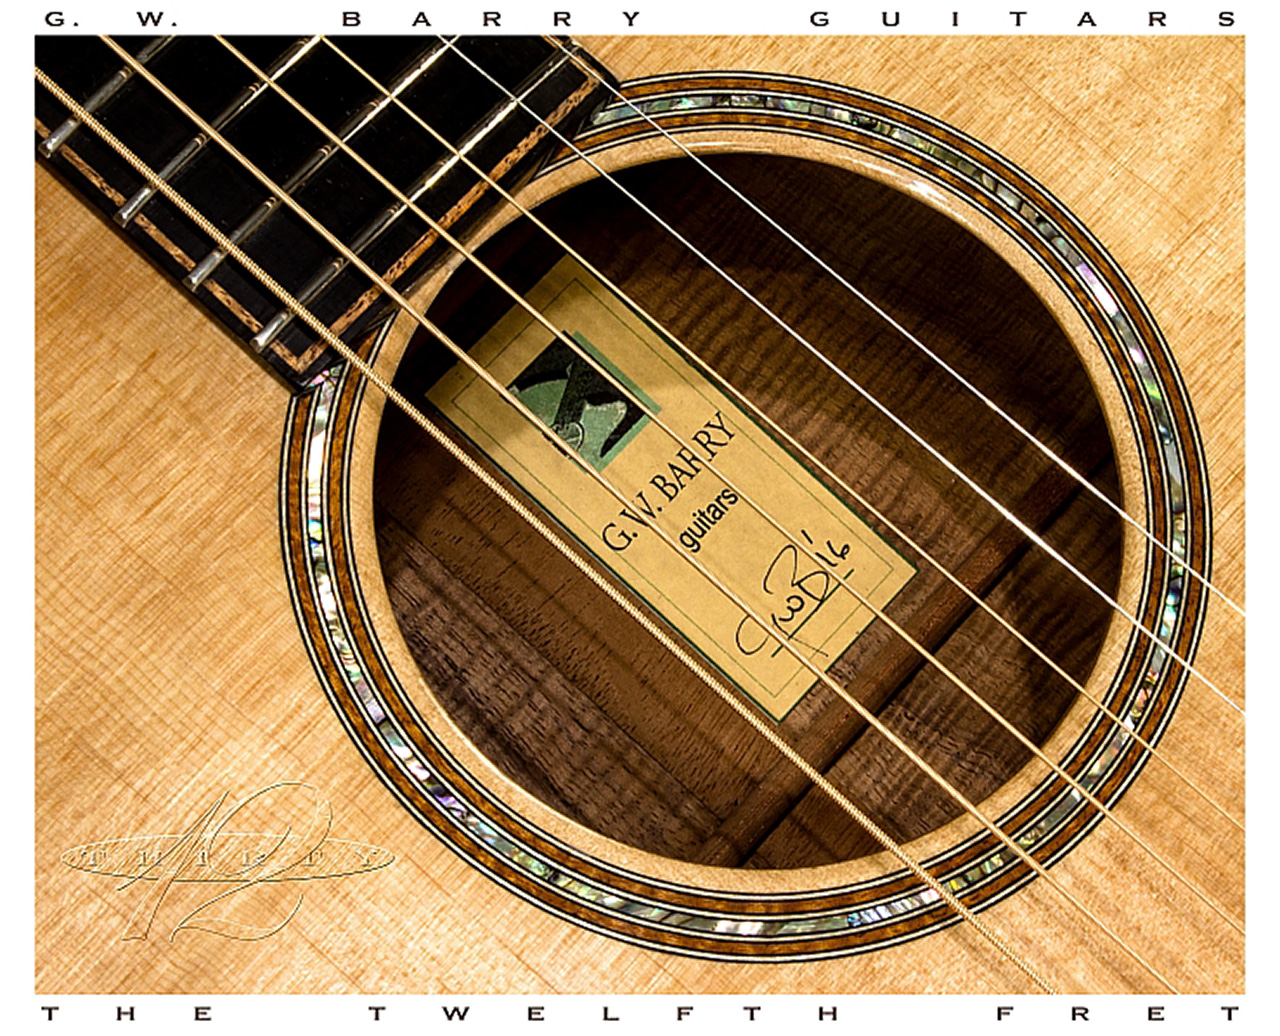 G W Barry 30-12 Koa 000+ Steel String Guitar 2016  Label View